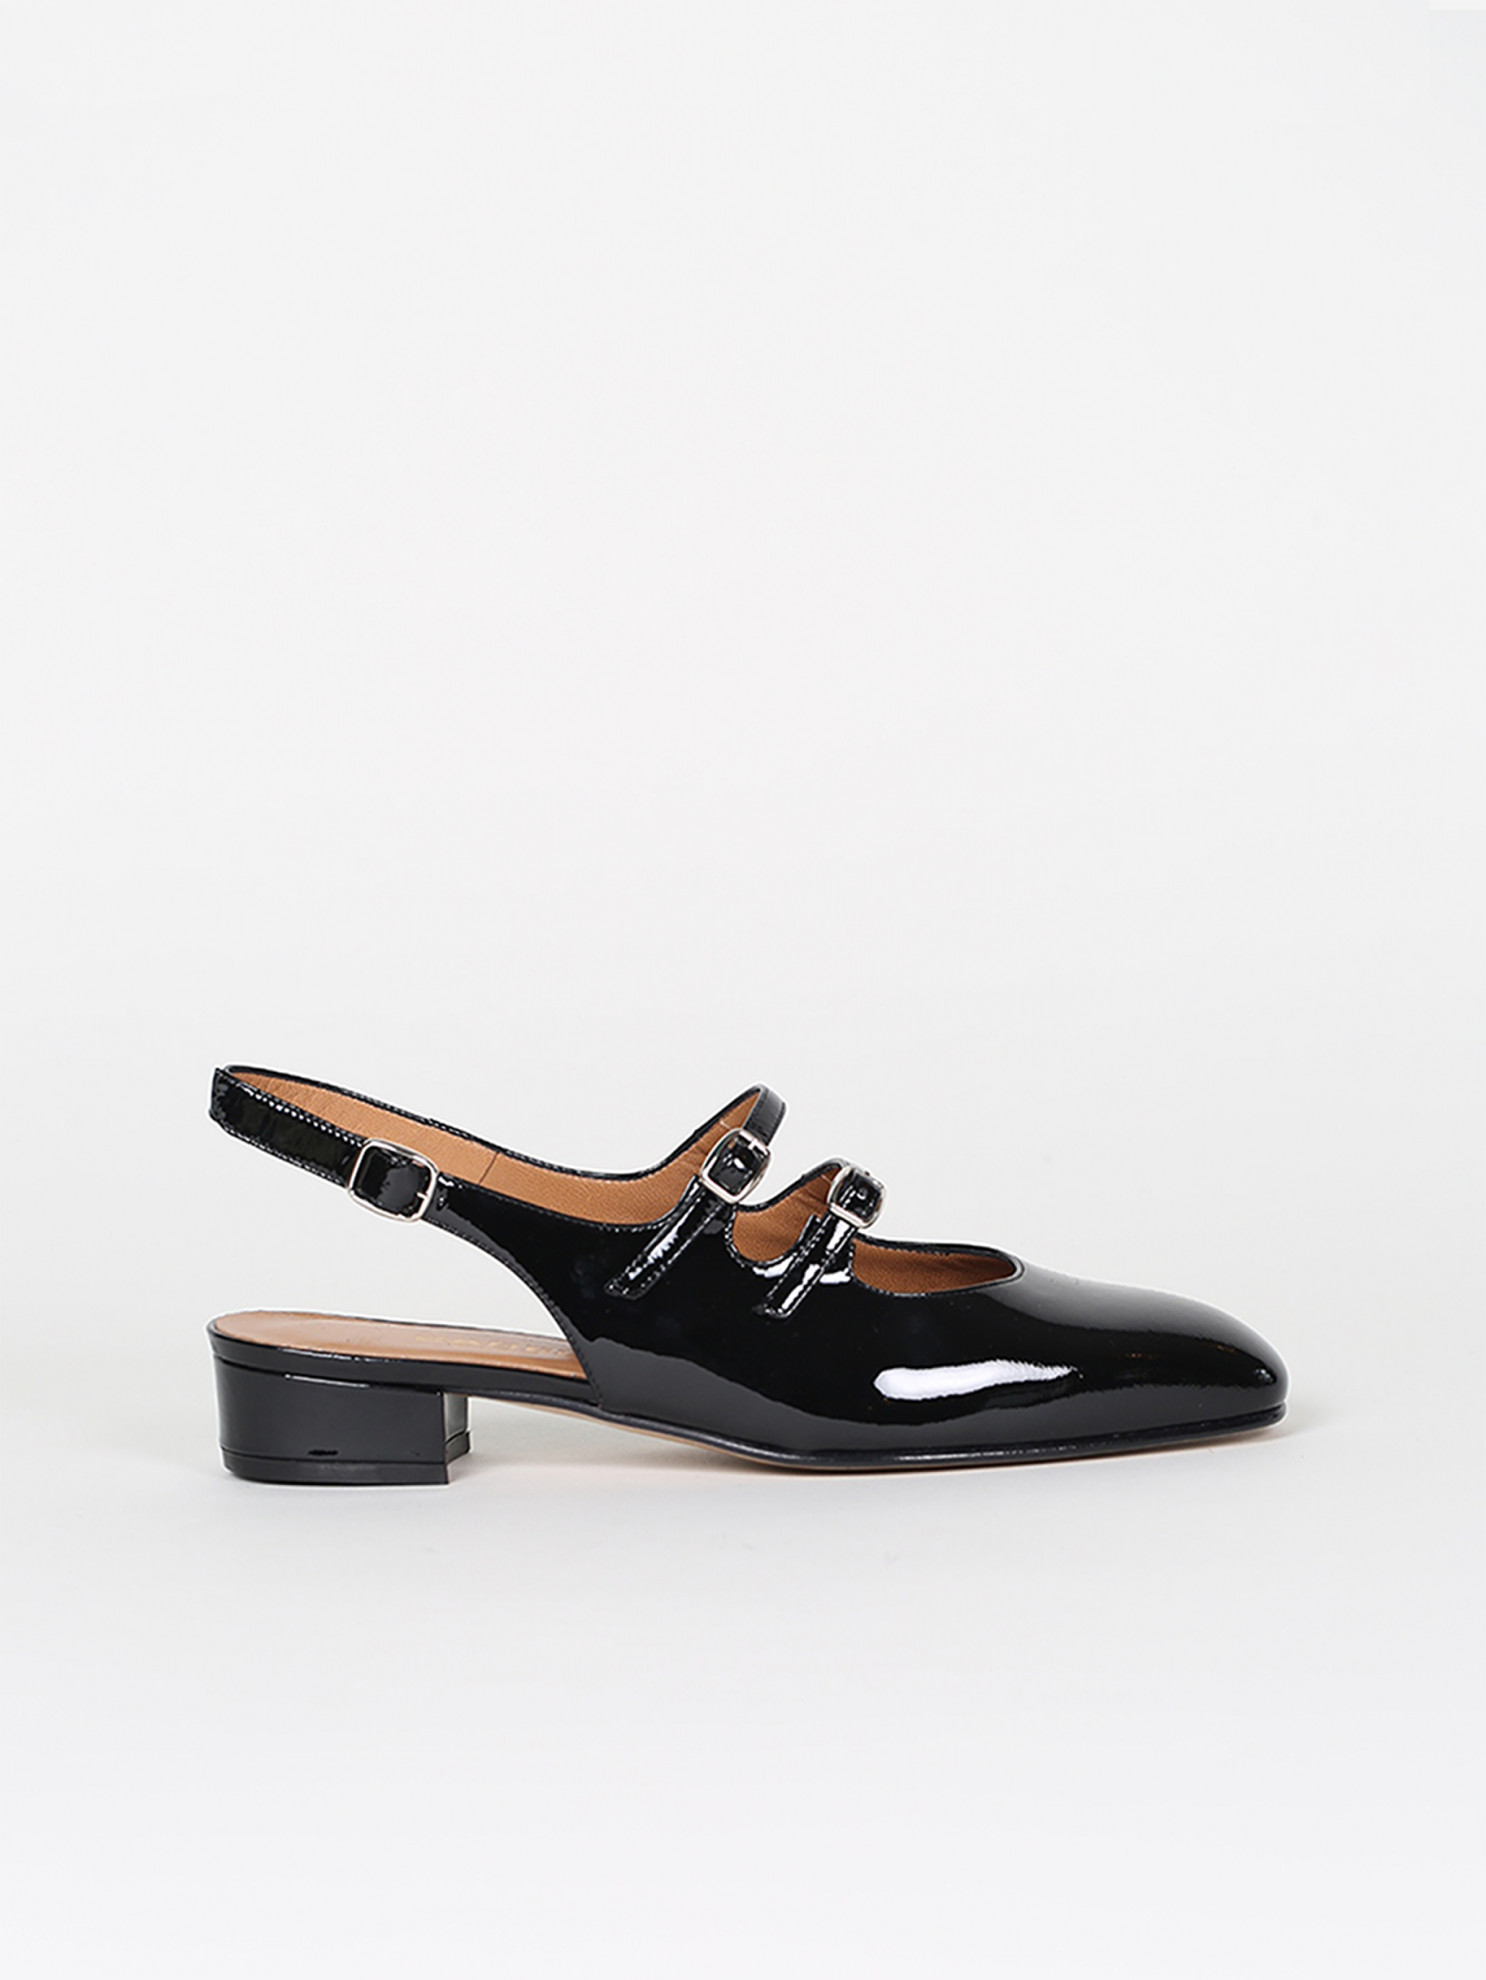 PECHE black patent leather mary janes | Carel Paris Shoes